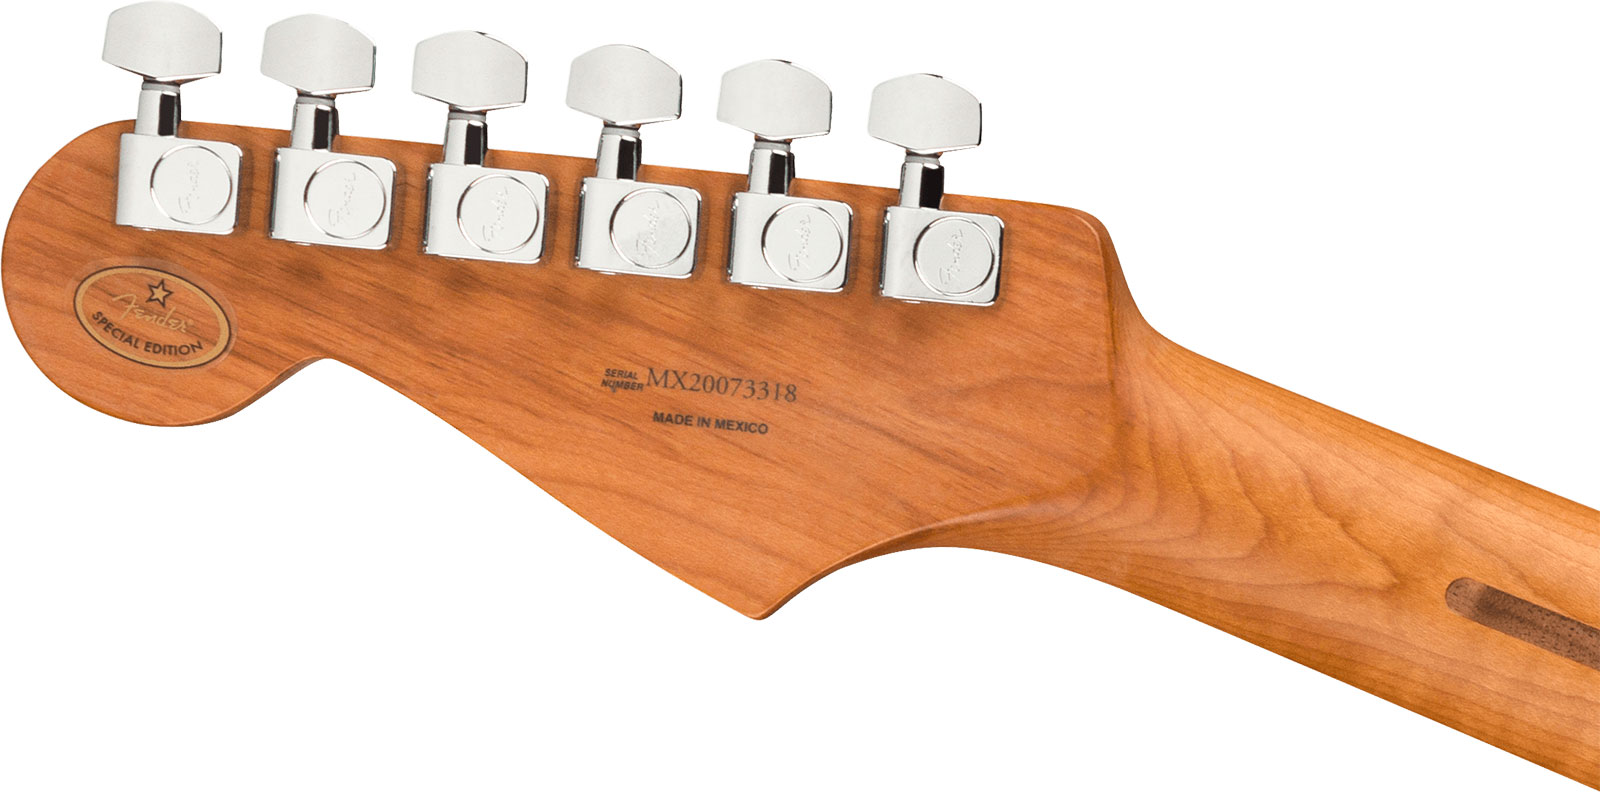 Fender Strat Player Roasted Maple Neck Ltd Mex 3s Trem Mn - 3 Color Sunburst - E-Gitarre in Str-Form - Variation 3